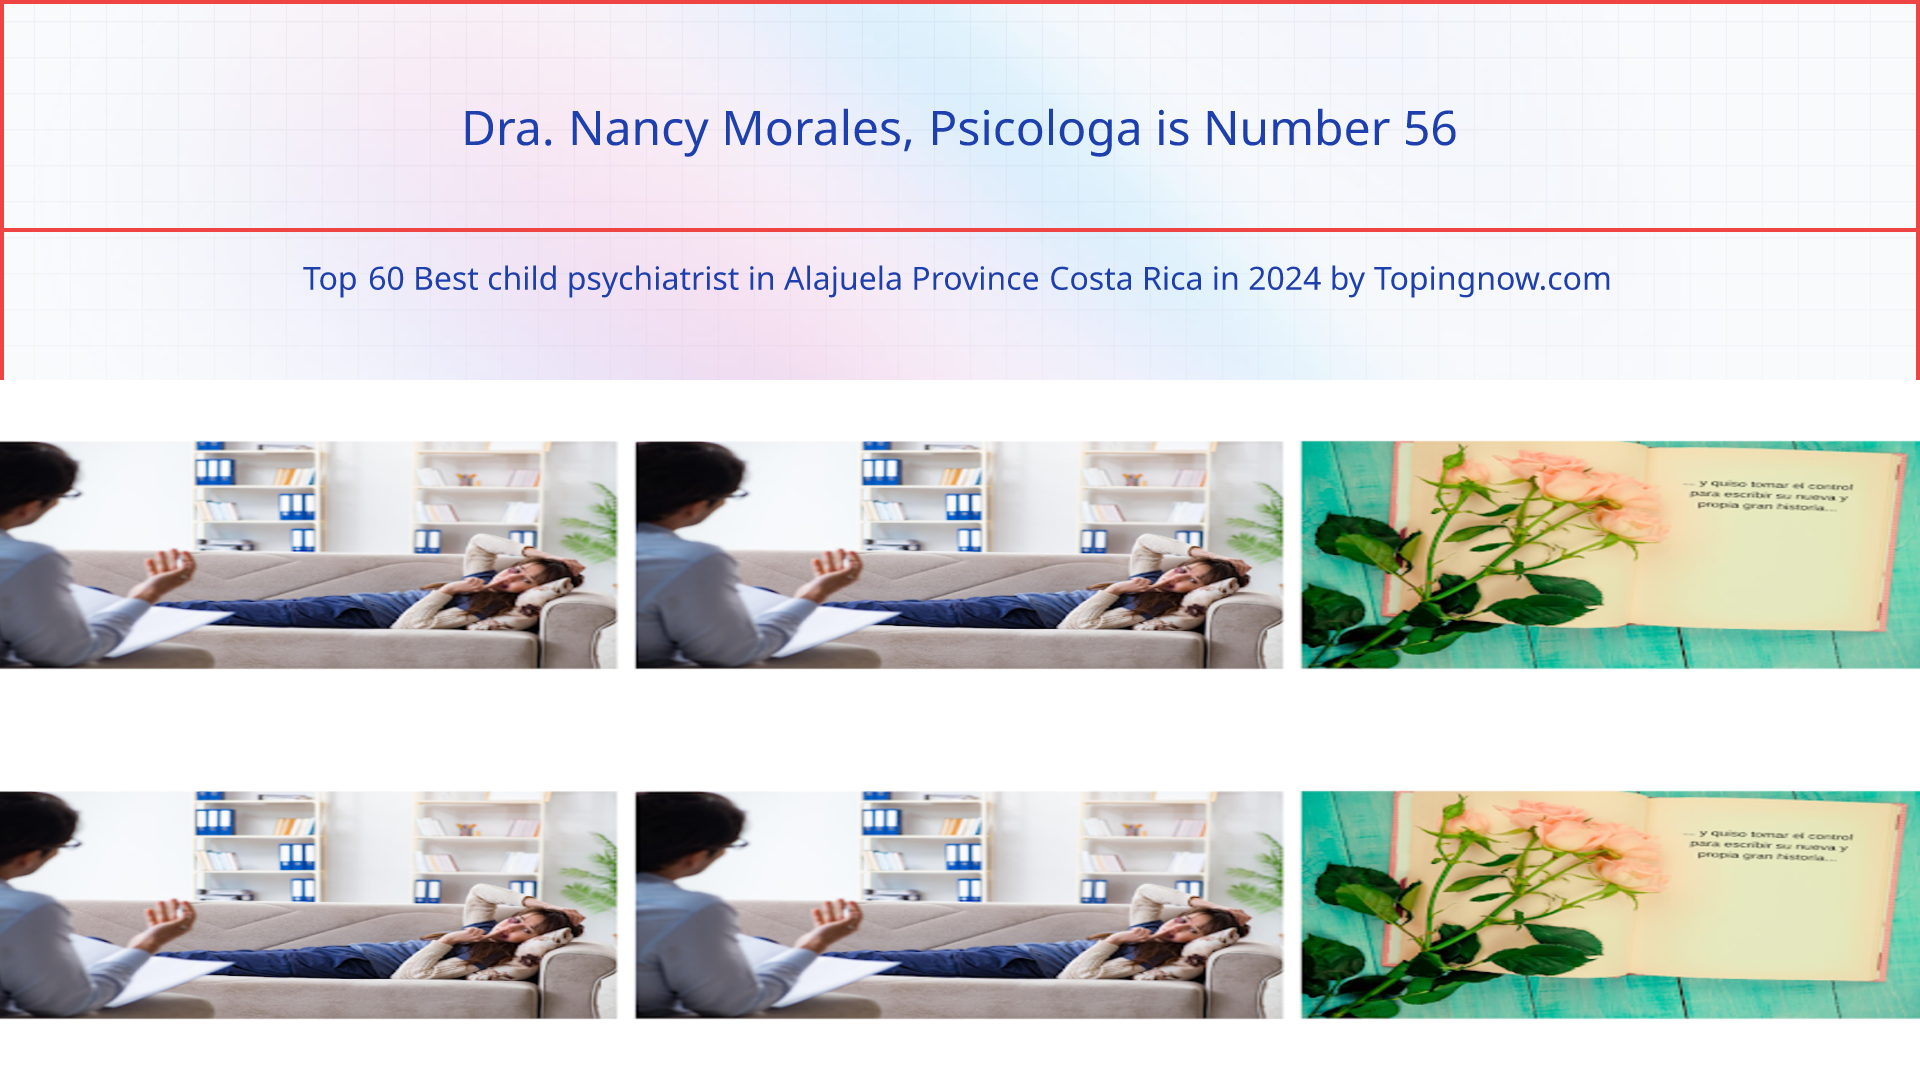 Dra. Nancy Morales, Psicologa: Top 60 Best child psychiatrist in Alajuela Province Costa Rica in 2024